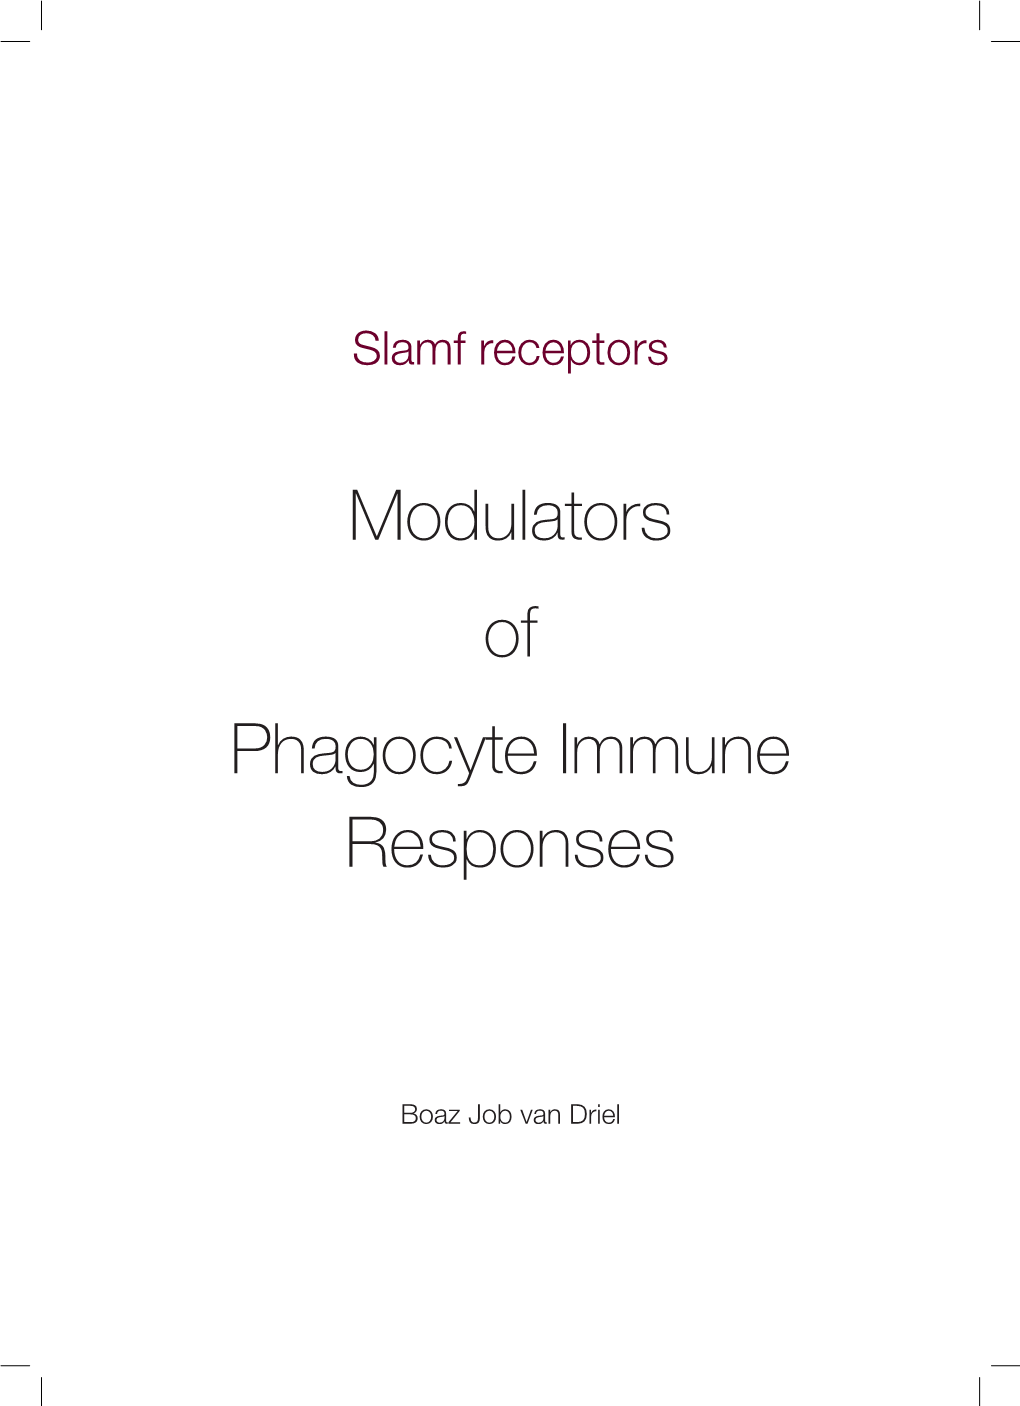 Modulators of Phagocyte Immune Responses